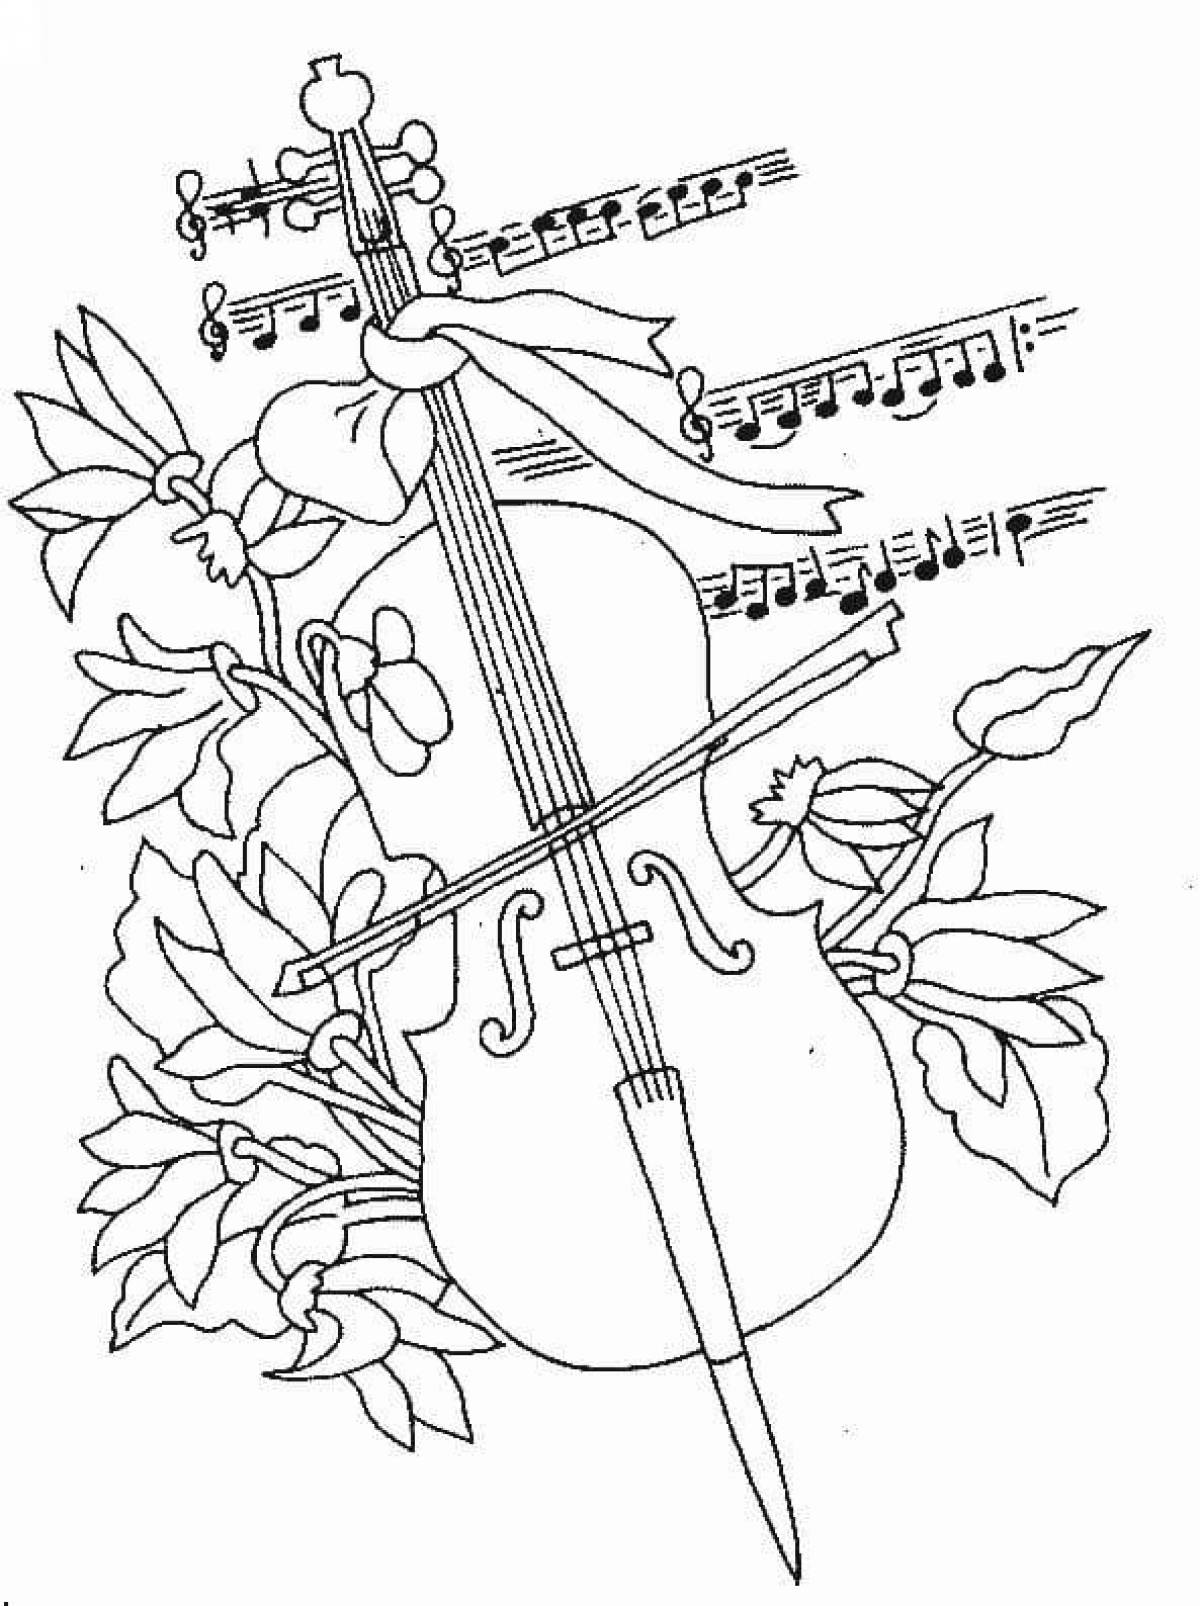 Красочно сделанная страница раскраски скрипки